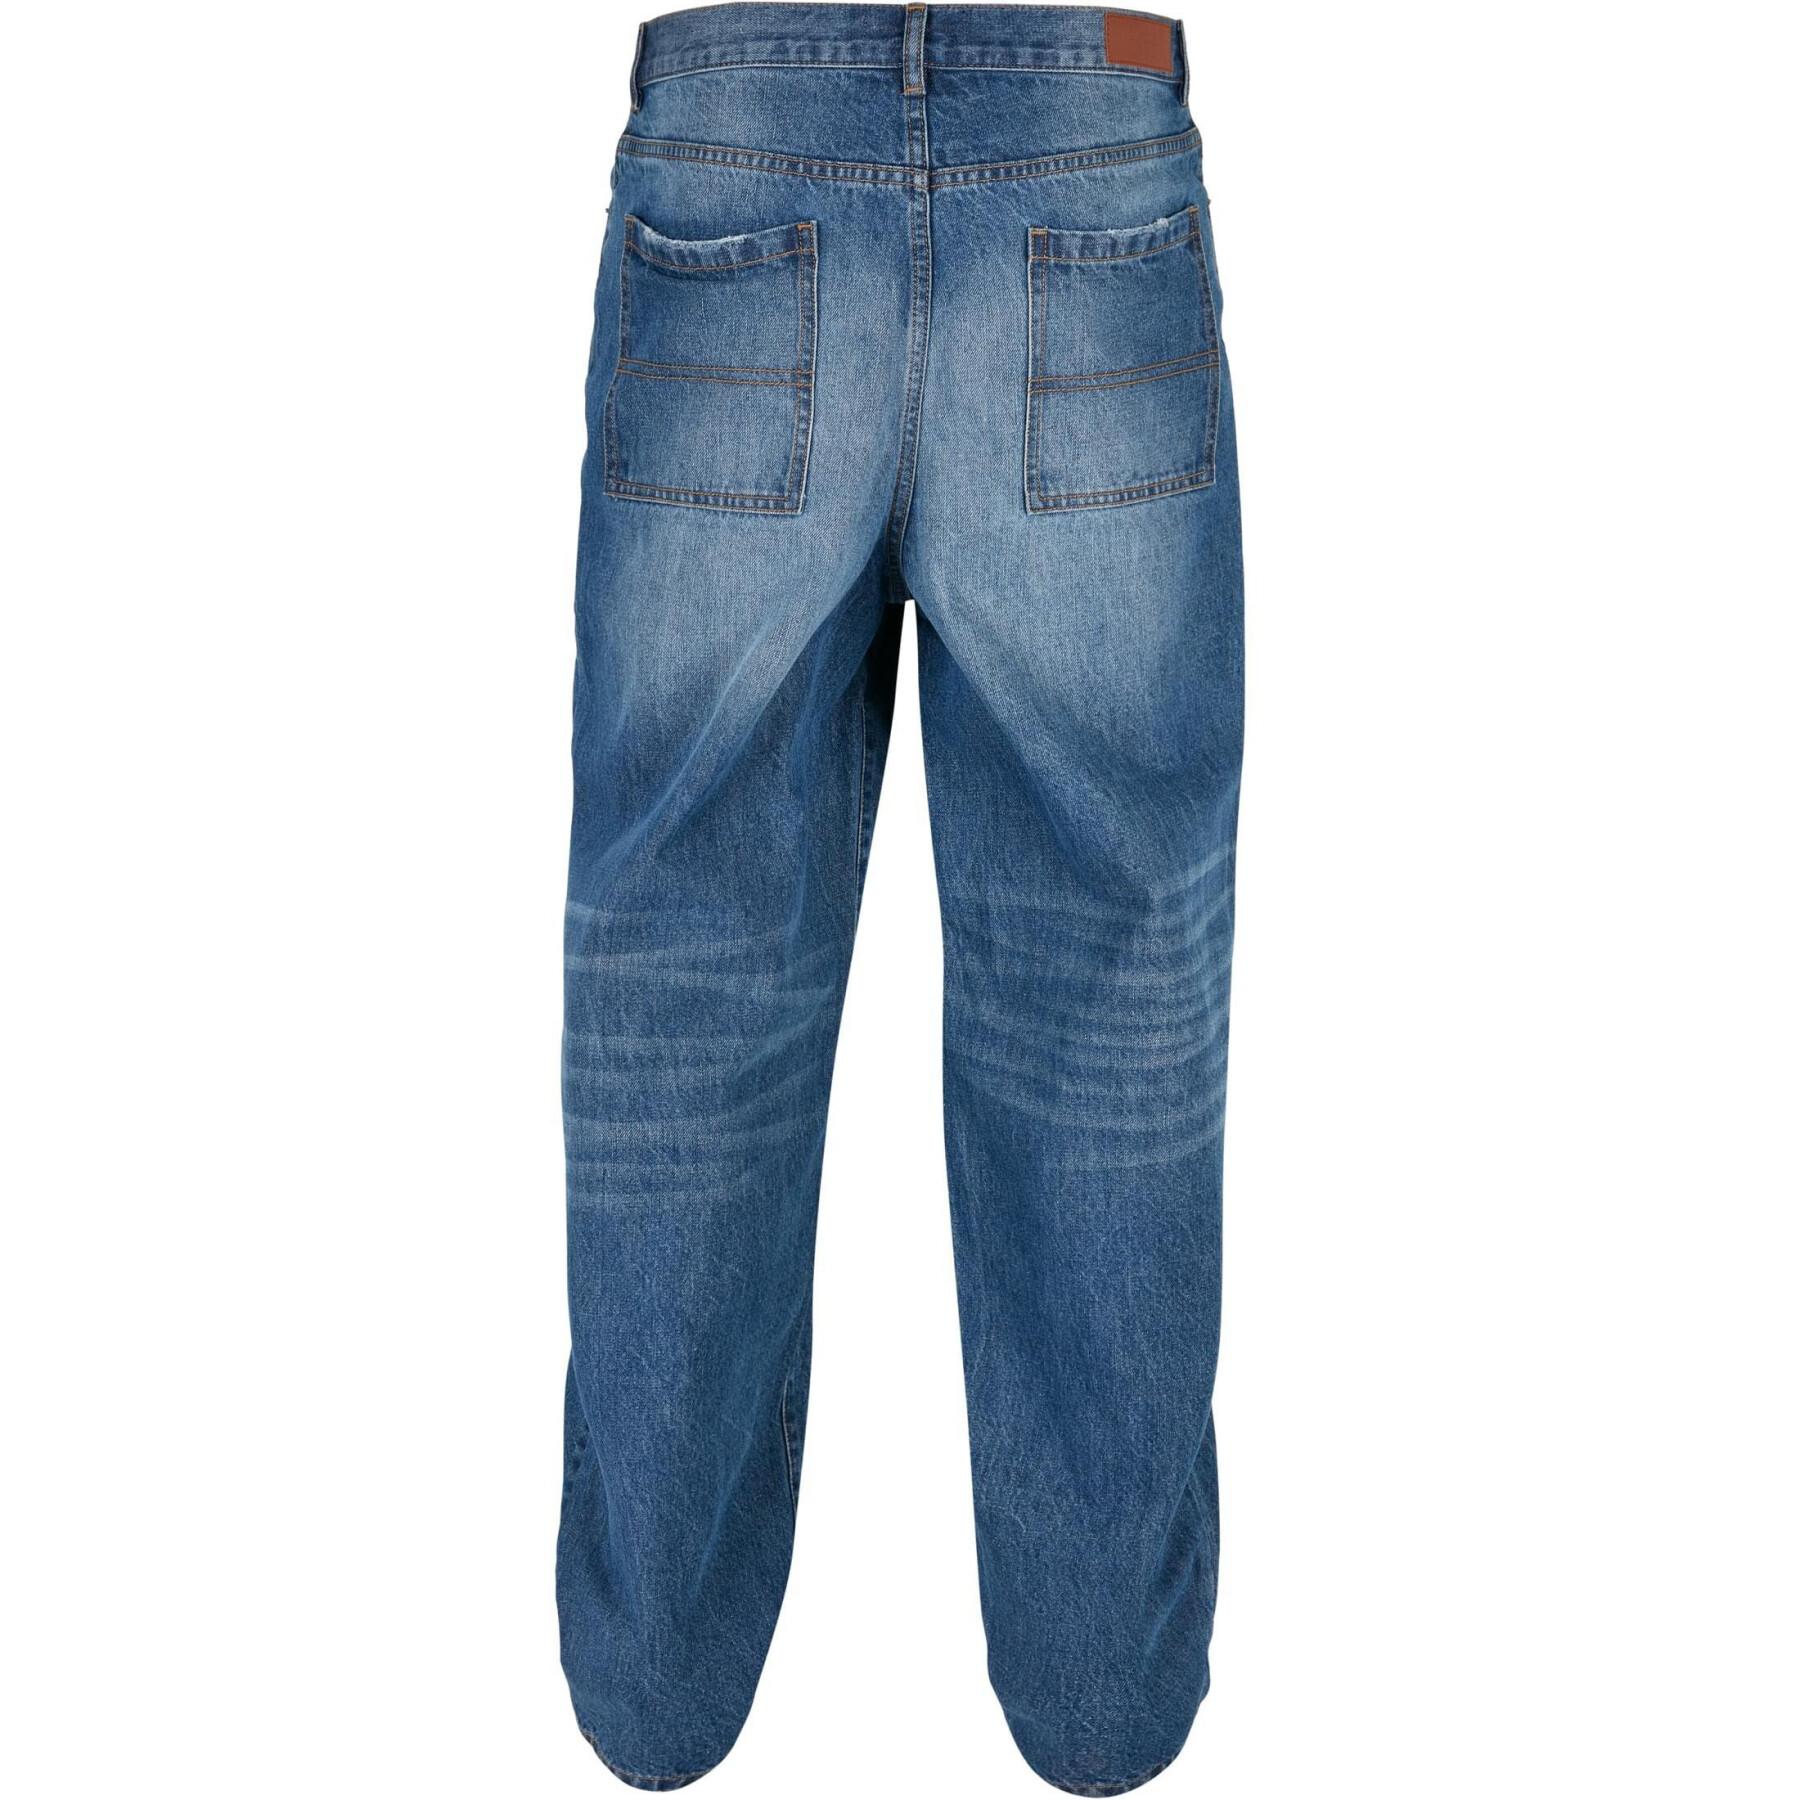 Jeans Urban Classics Distressed 90‘s